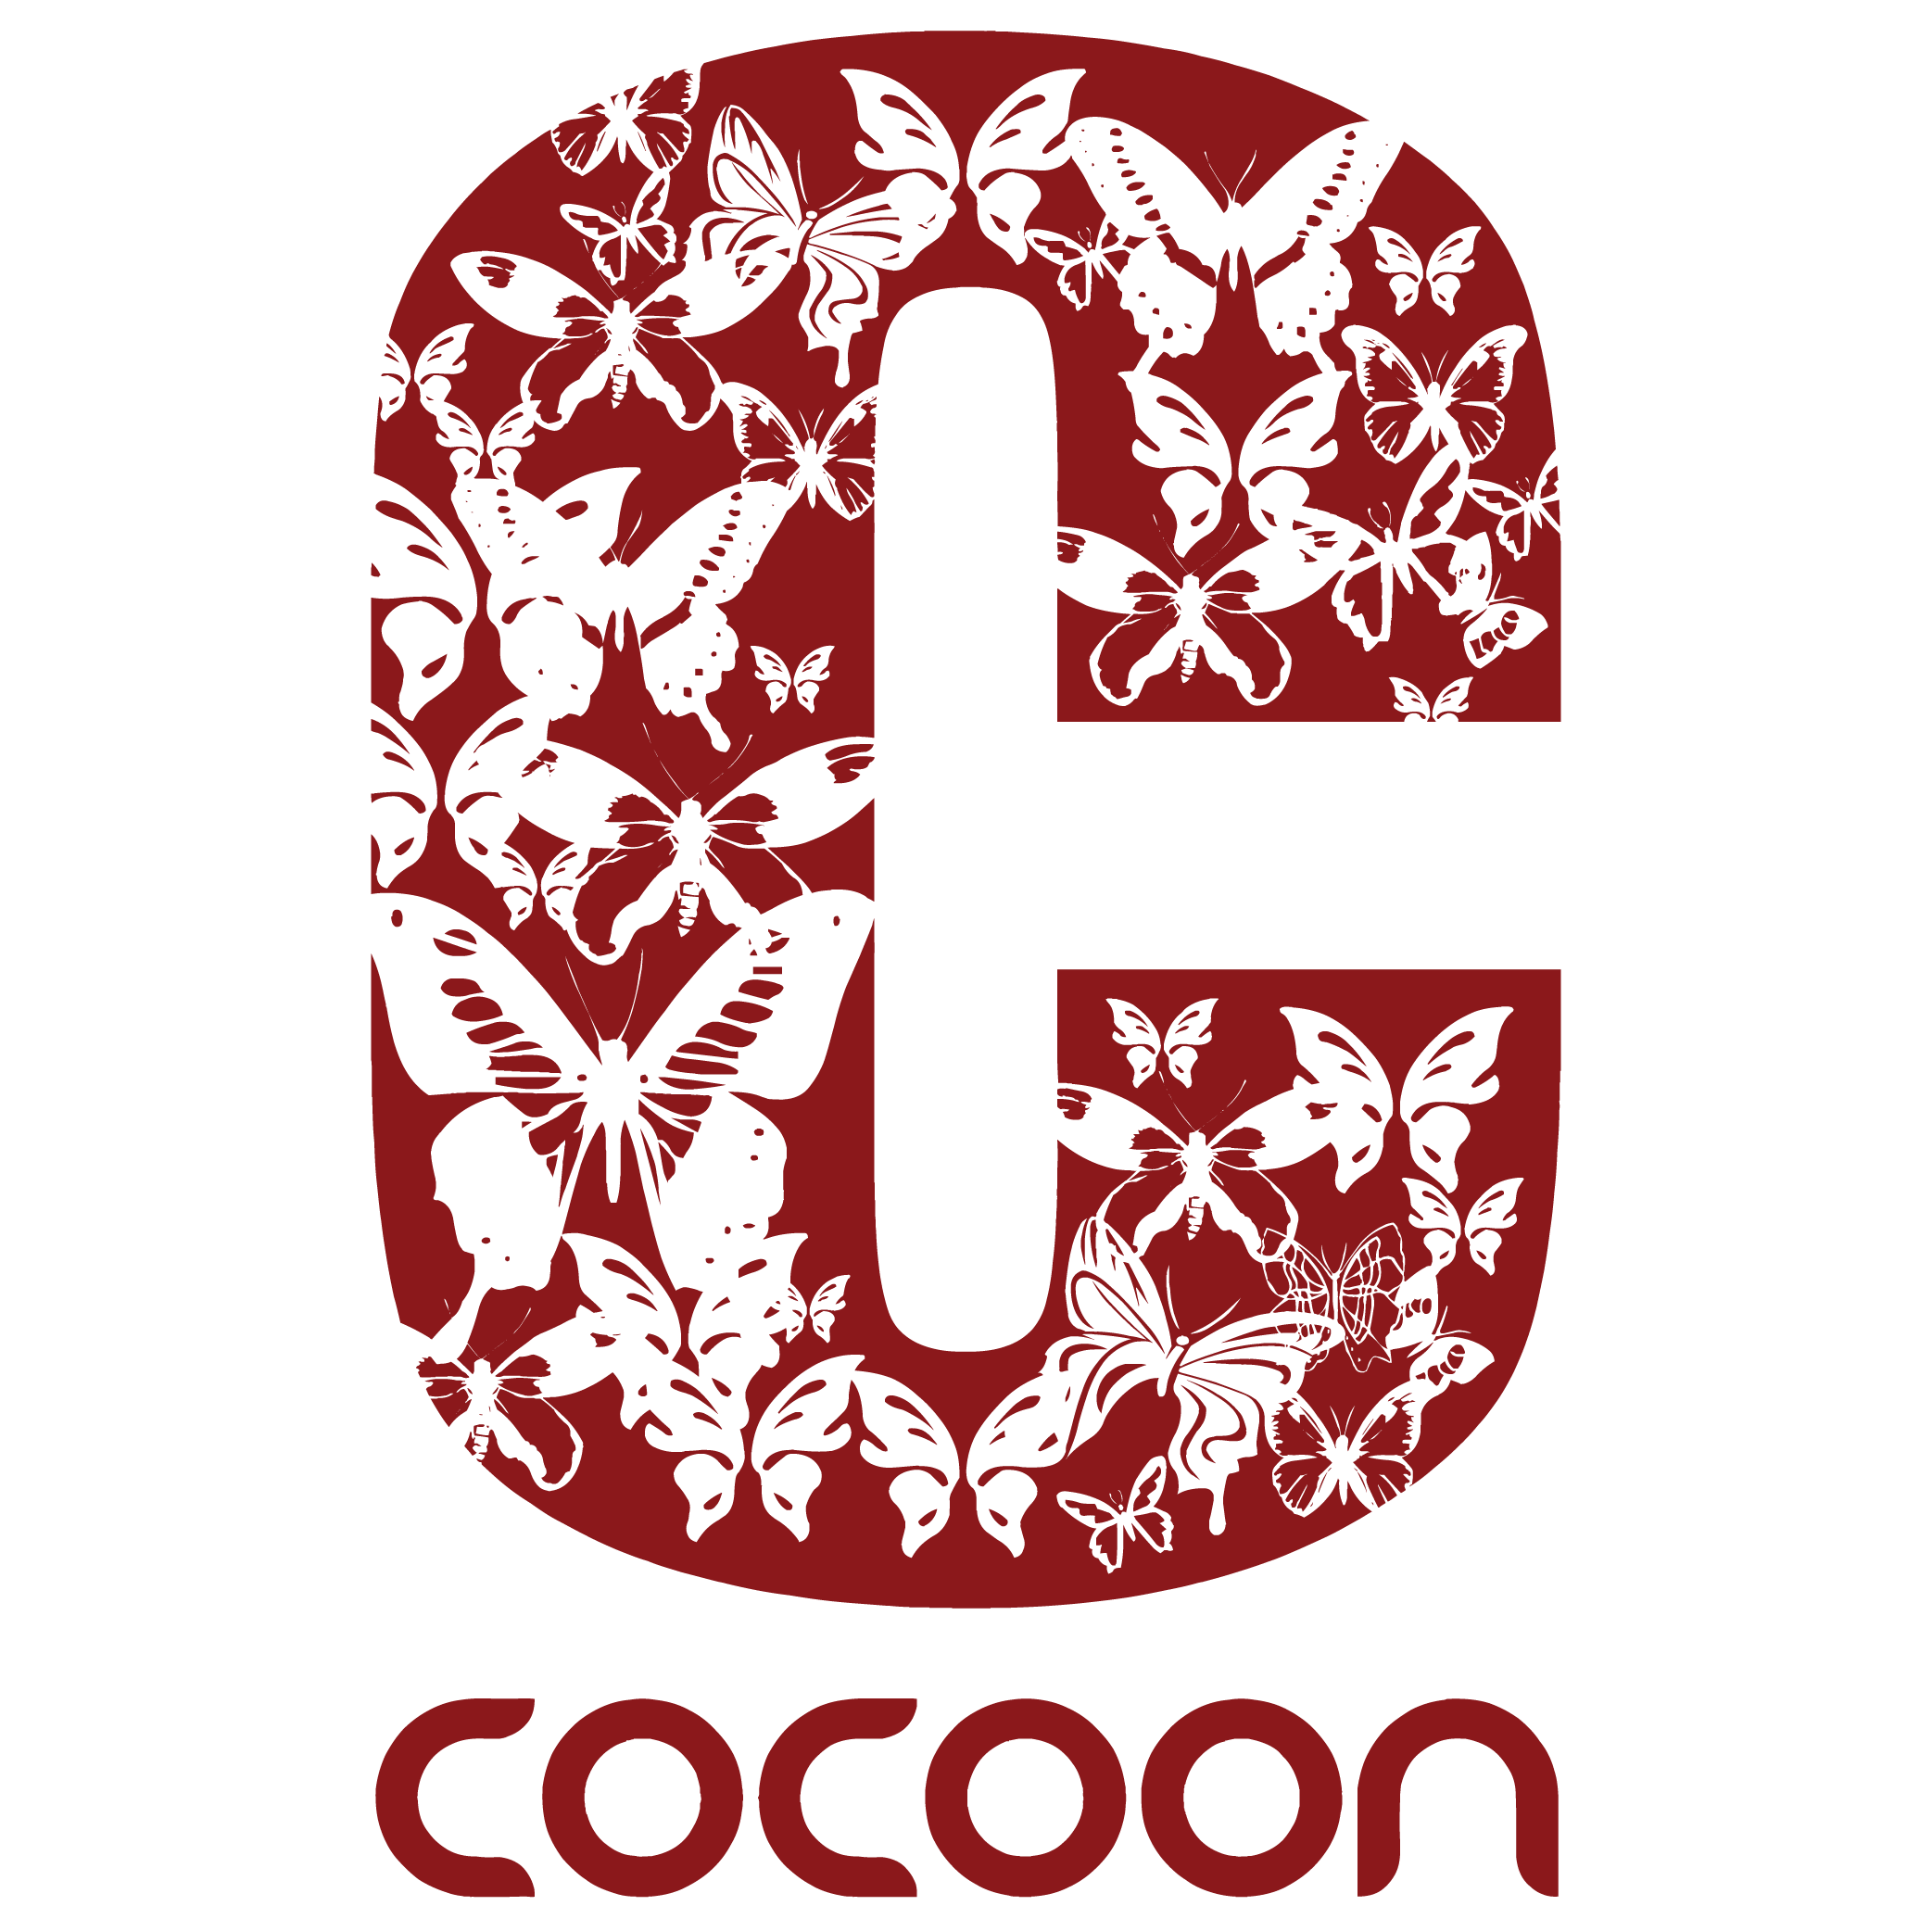 Cocoon Hair